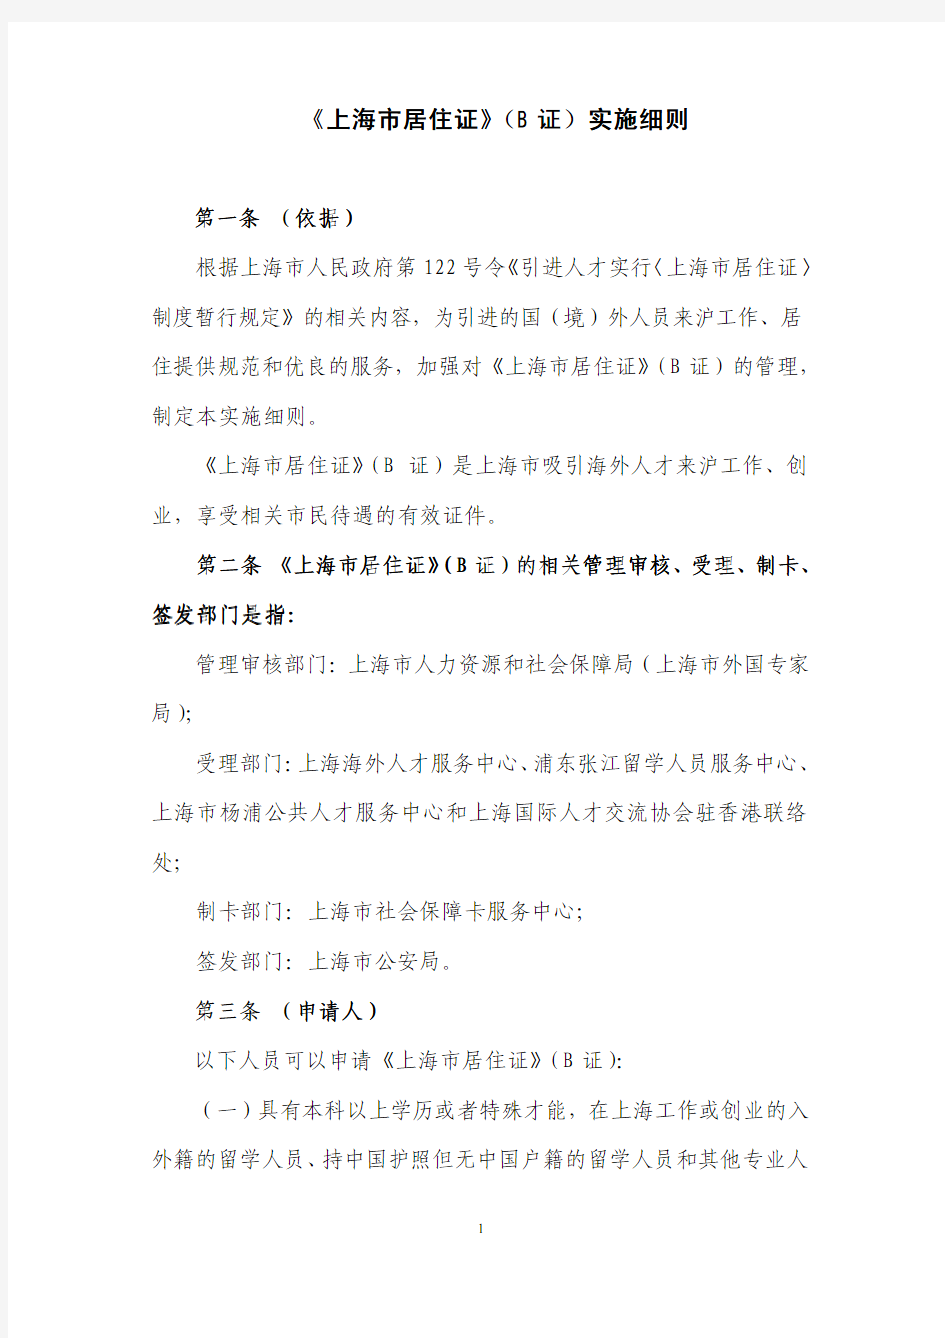 上海市居住证(B证)实施细则